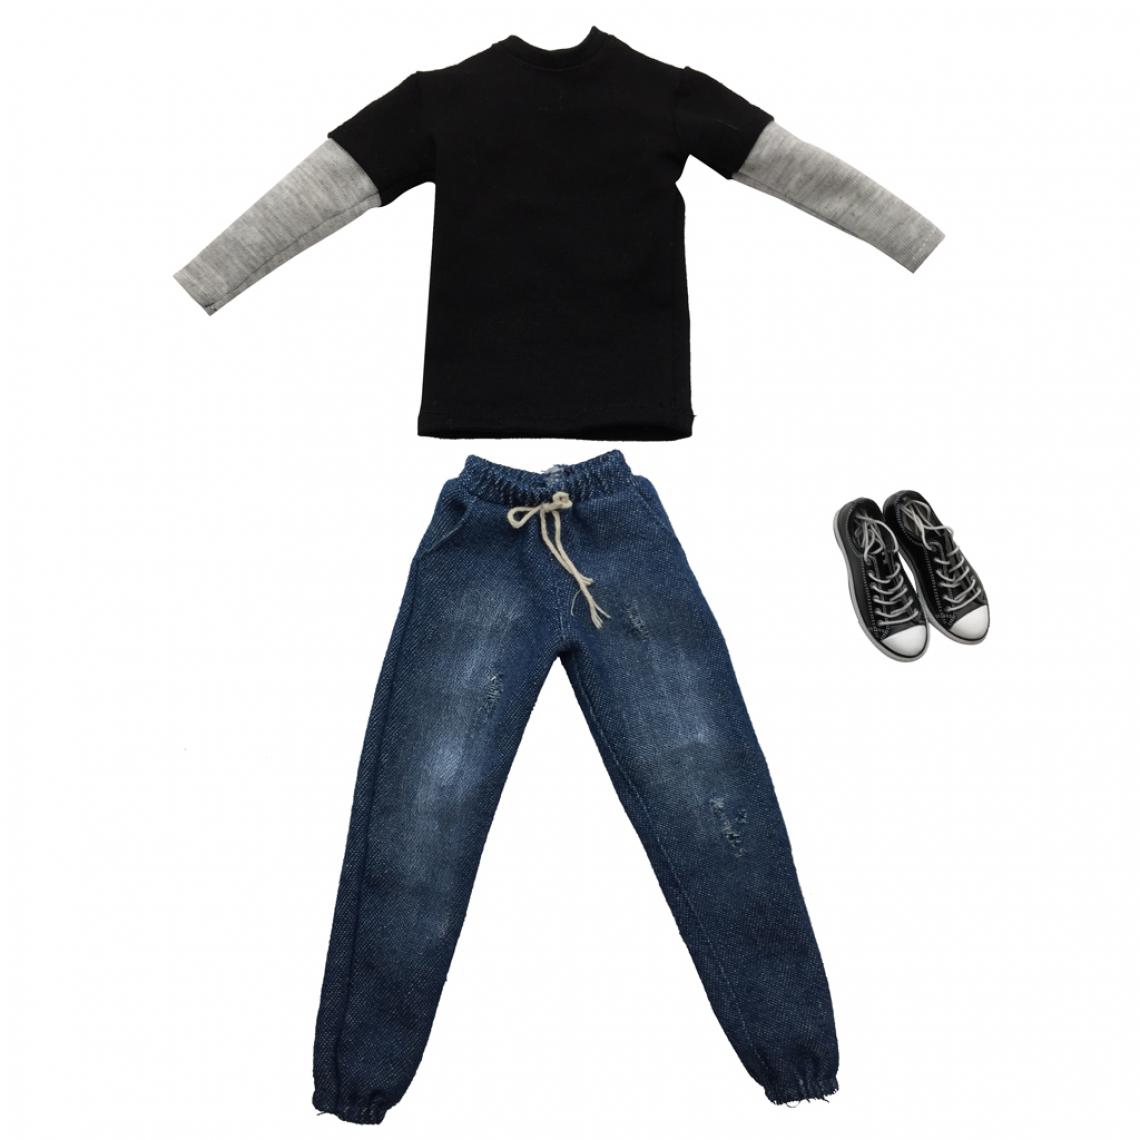 marque generique - 1/6 Échelle Homme Vêtements Noir Long T-shirt Jeans Toile Chaussures Set Pour 12 '' Action Figure - Guerriers